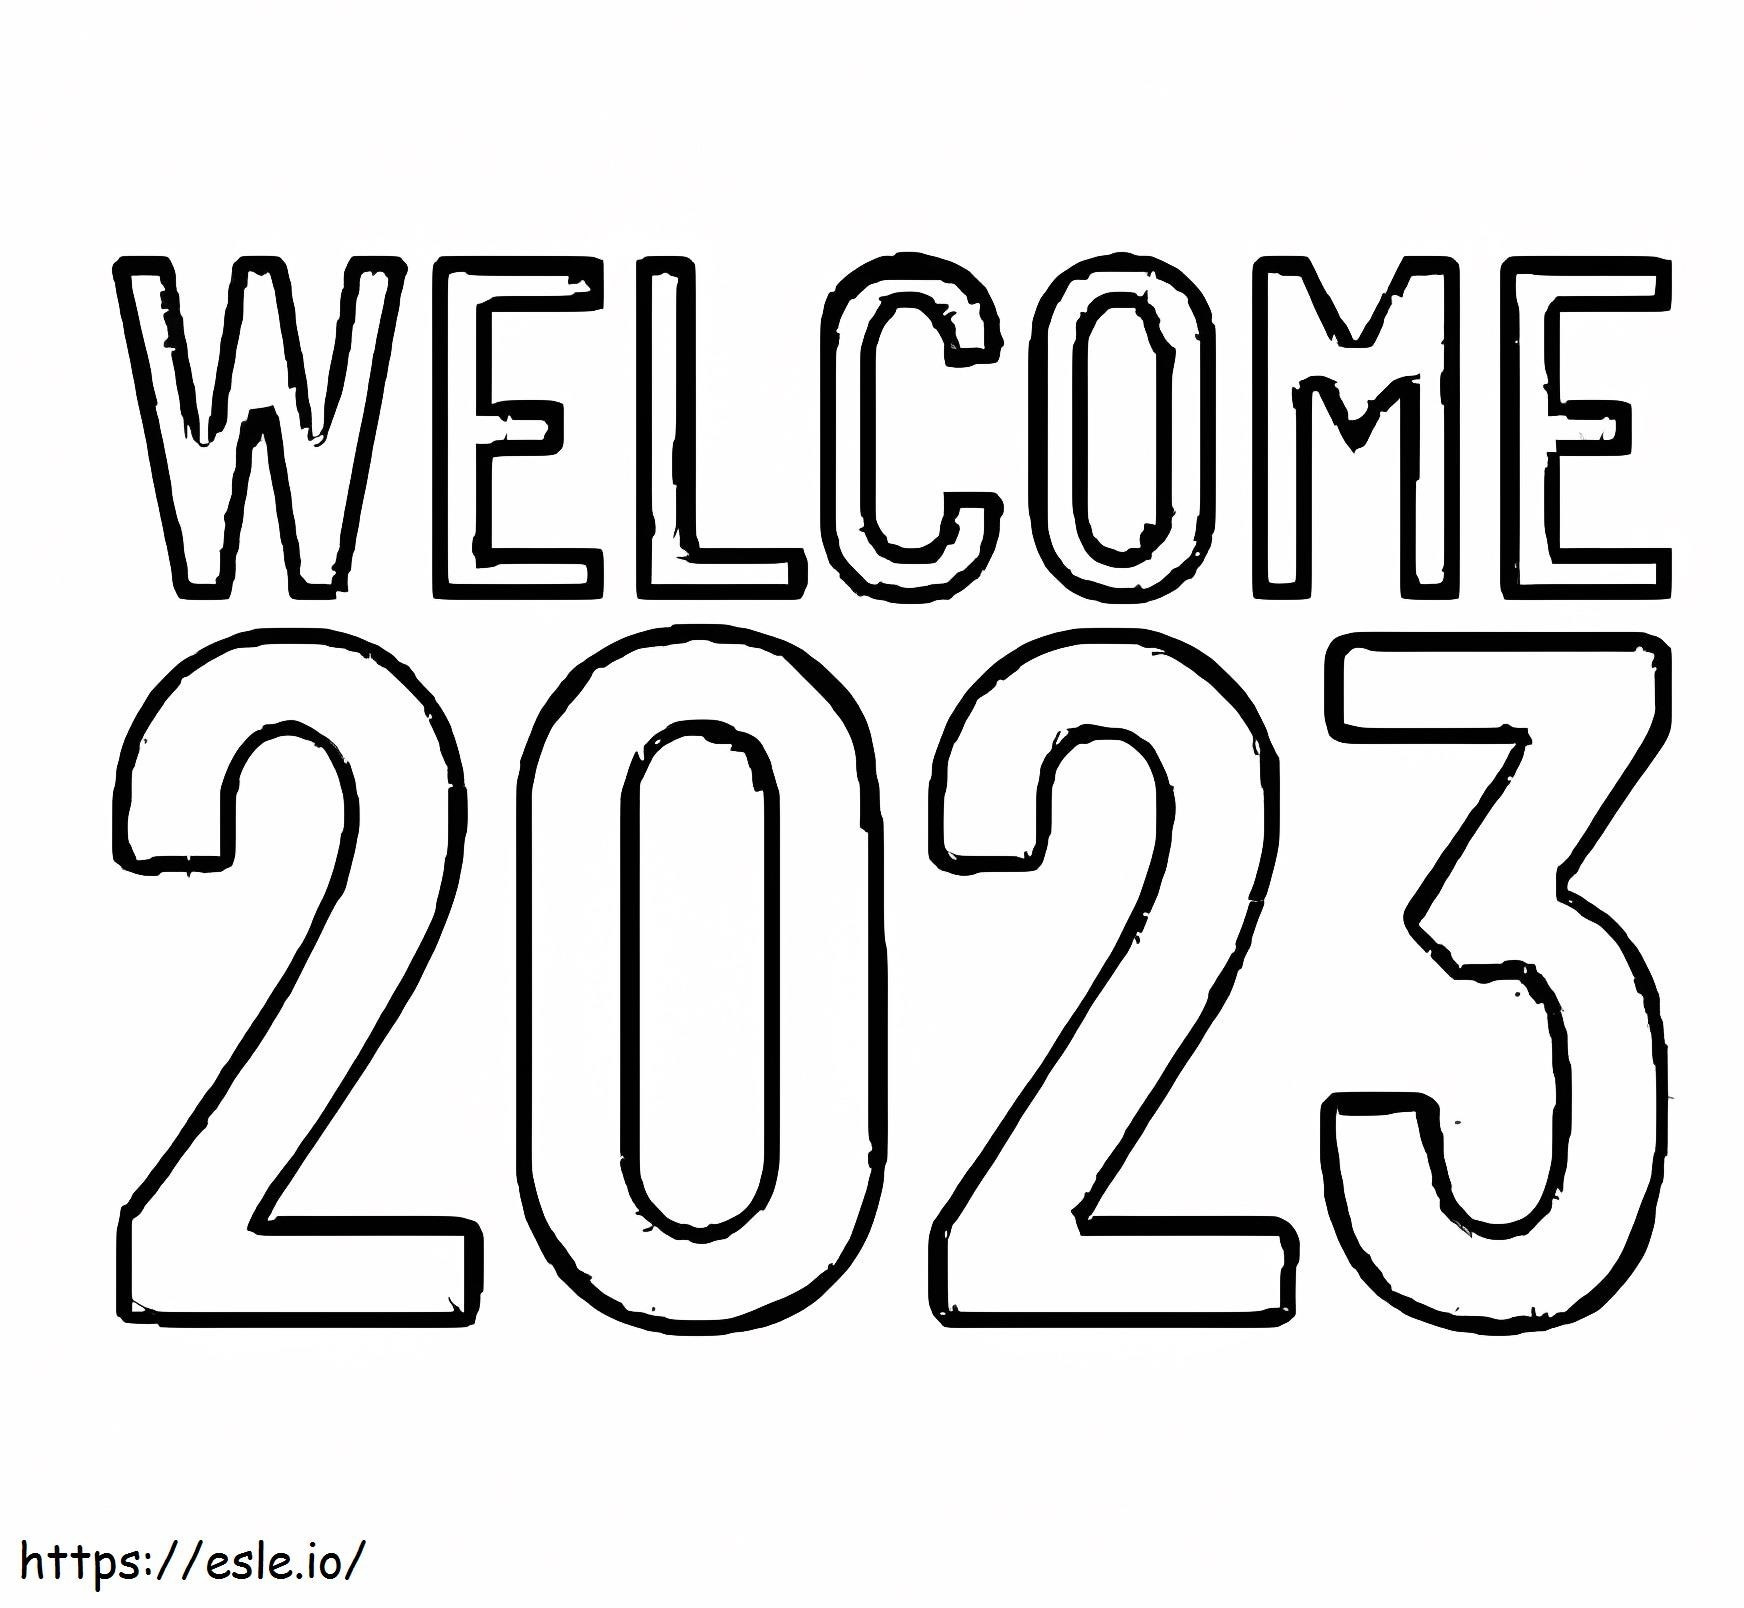 Selamat datang tahun 2023 Gambar Mewarnai